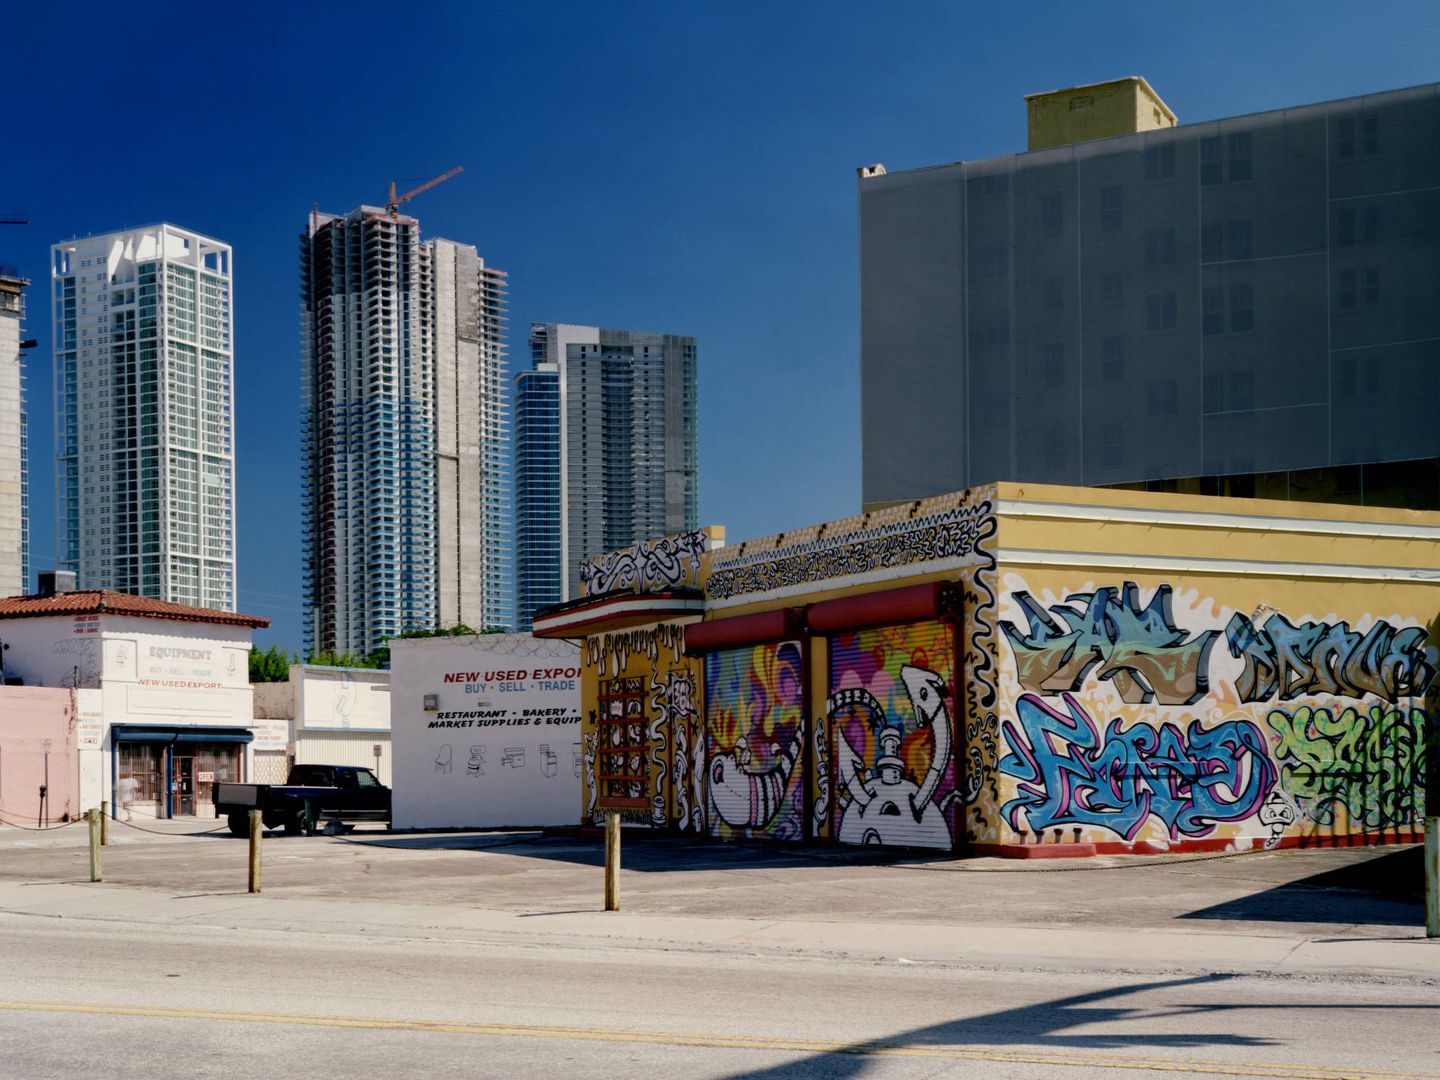  Miami, donde conviven graffitis y rascacielos.